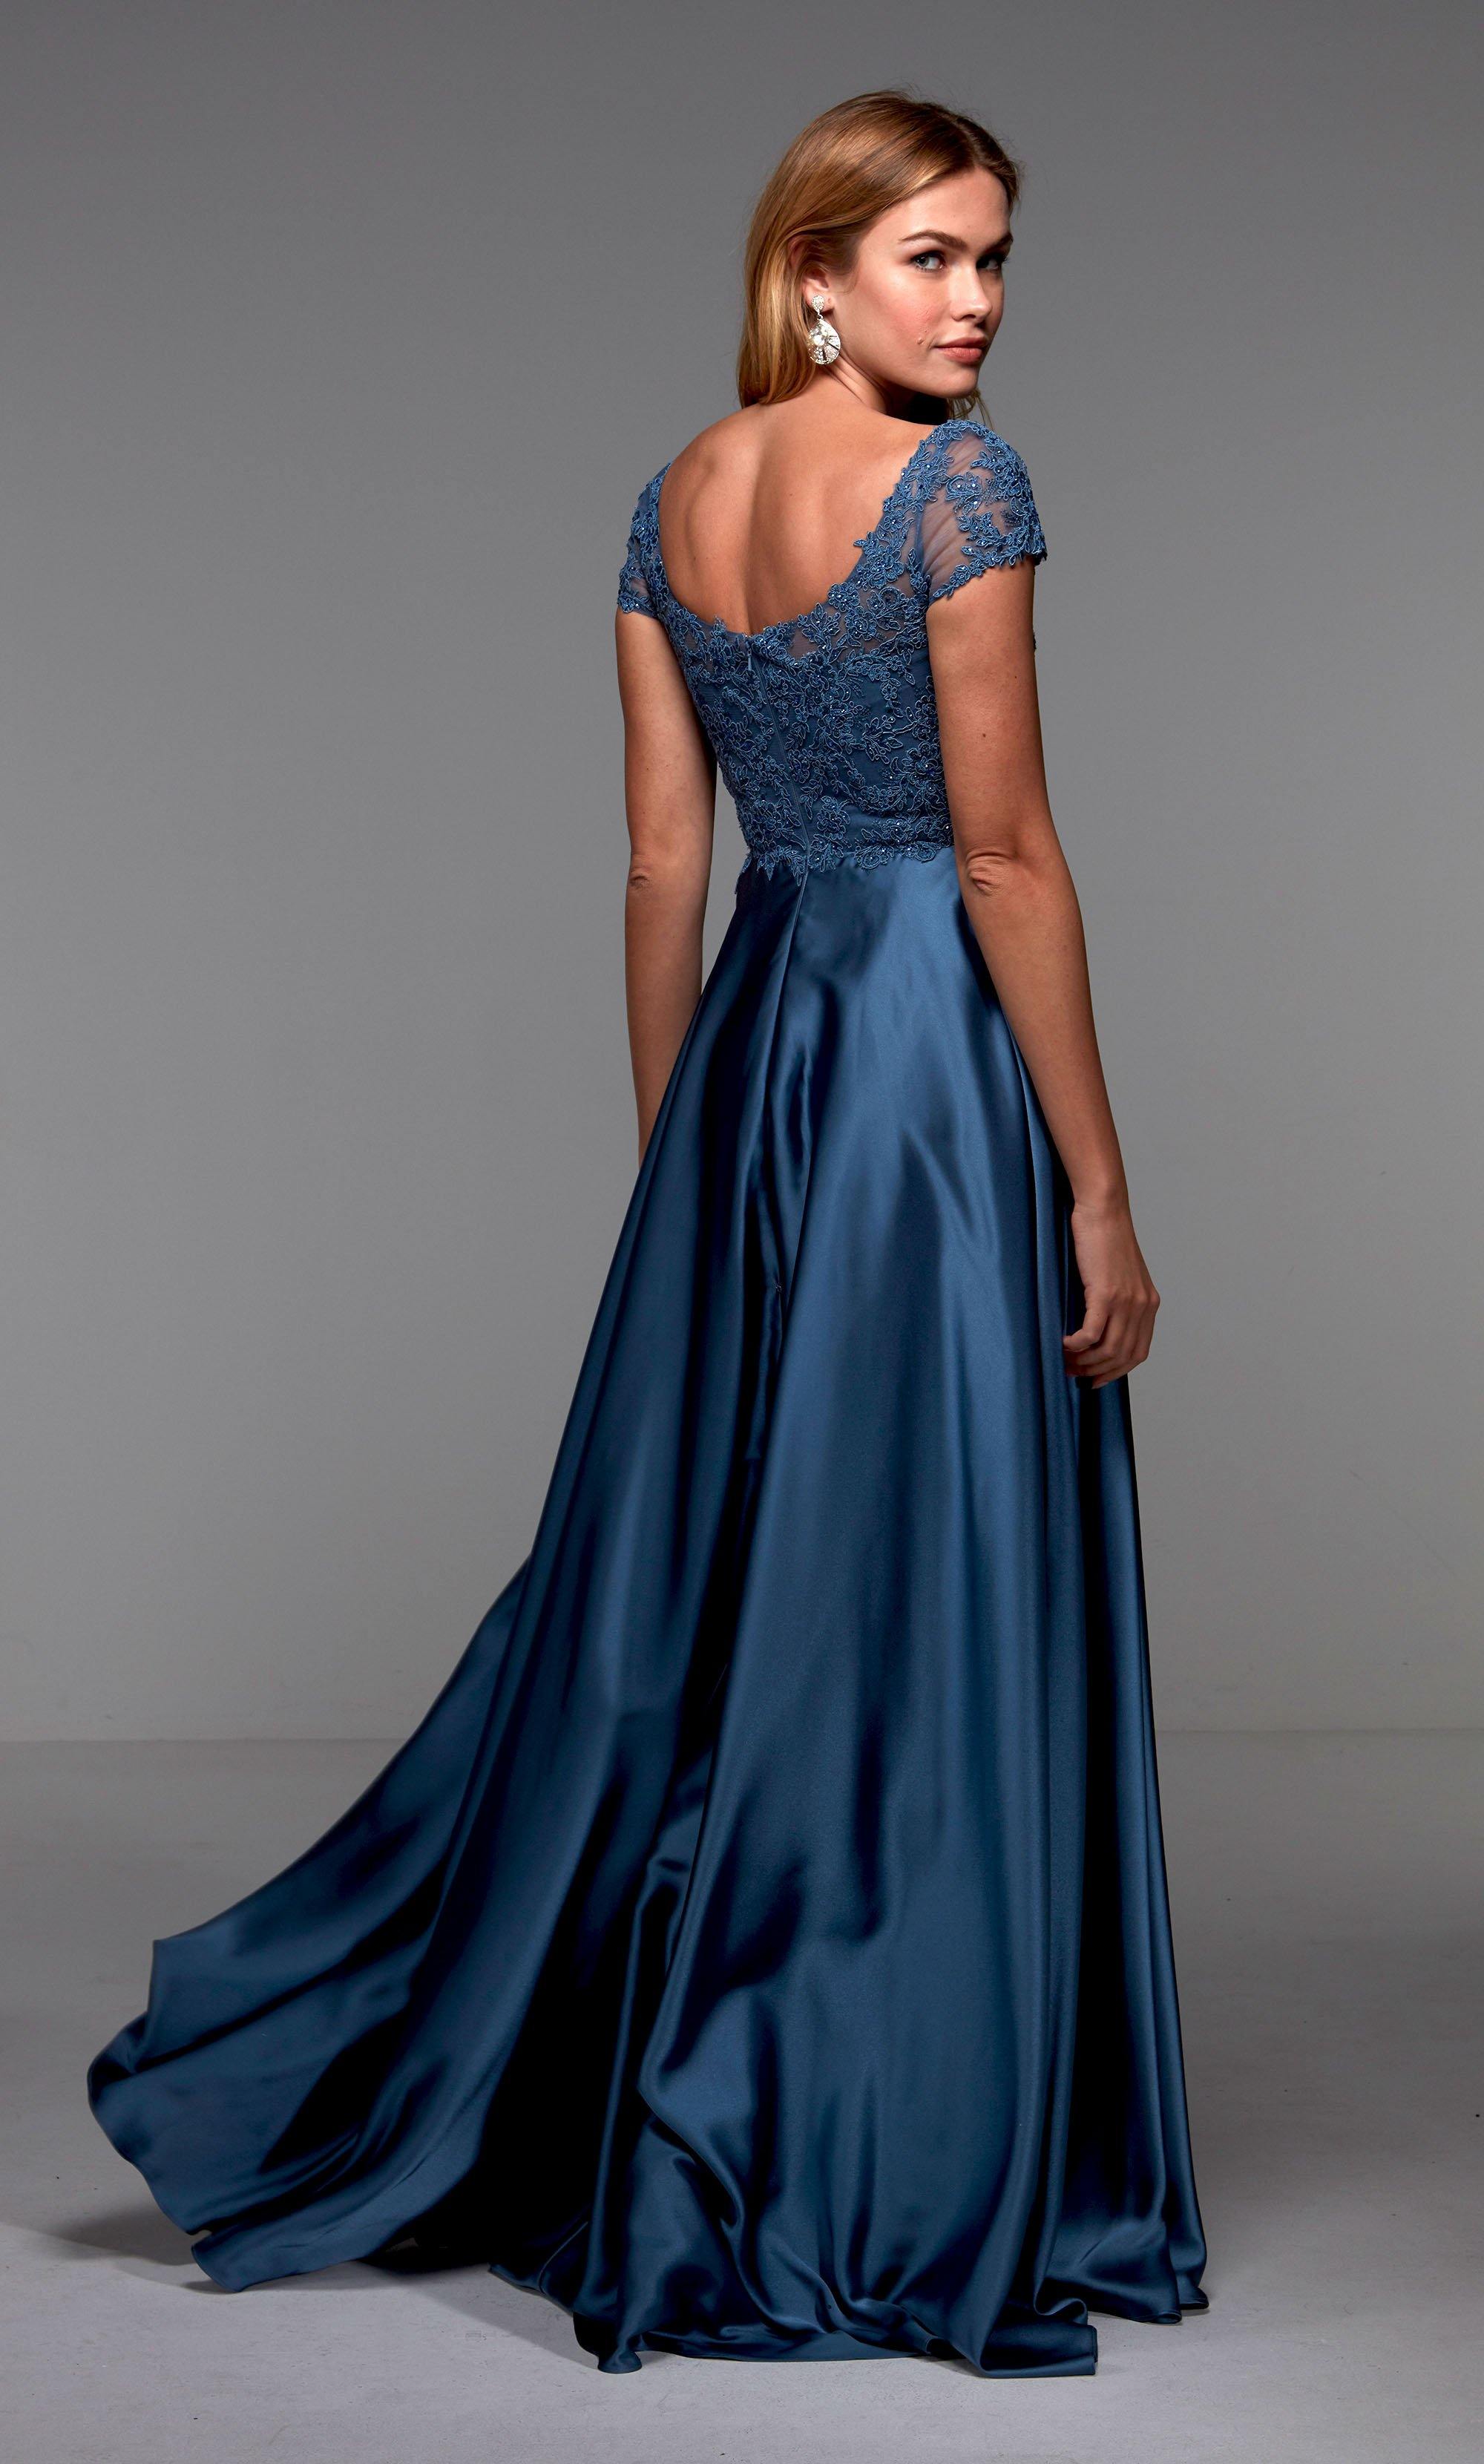 Blush 3D Flower Prom Dresses Off the Shoulder Long Formal Dress FD2980 –  Viniodress